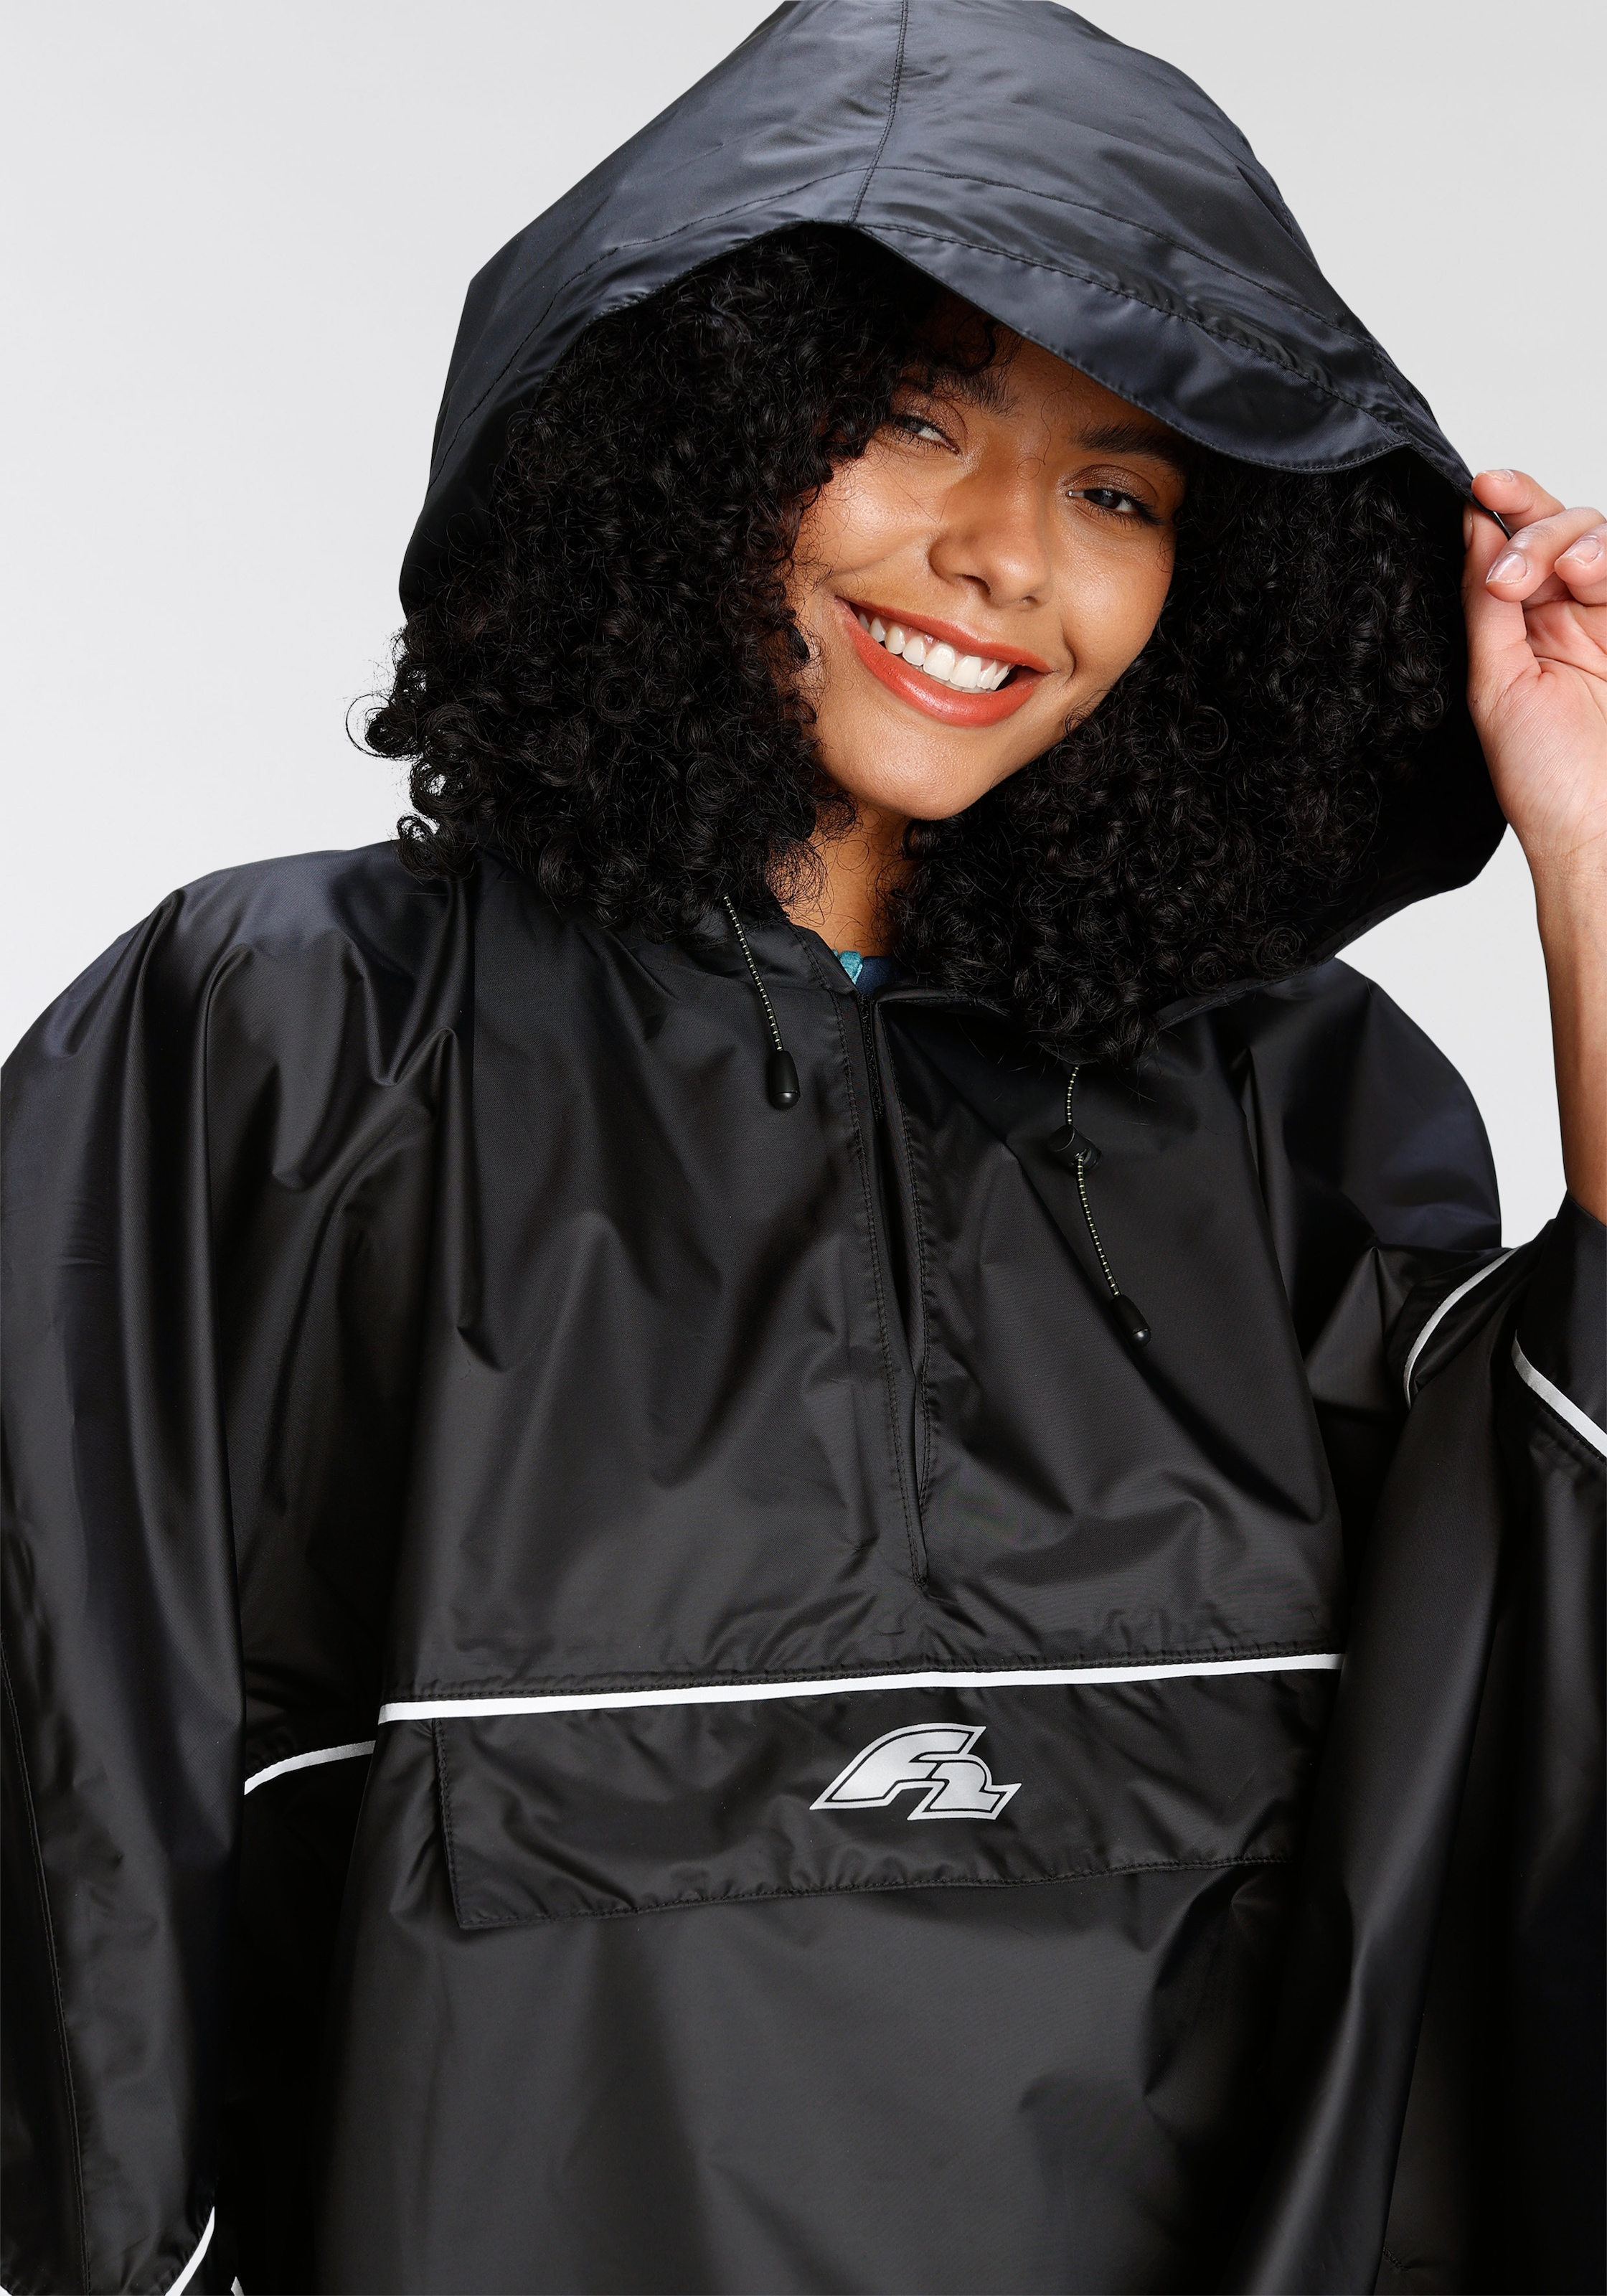 Damen Regenjacke schwarz, Regenponcho